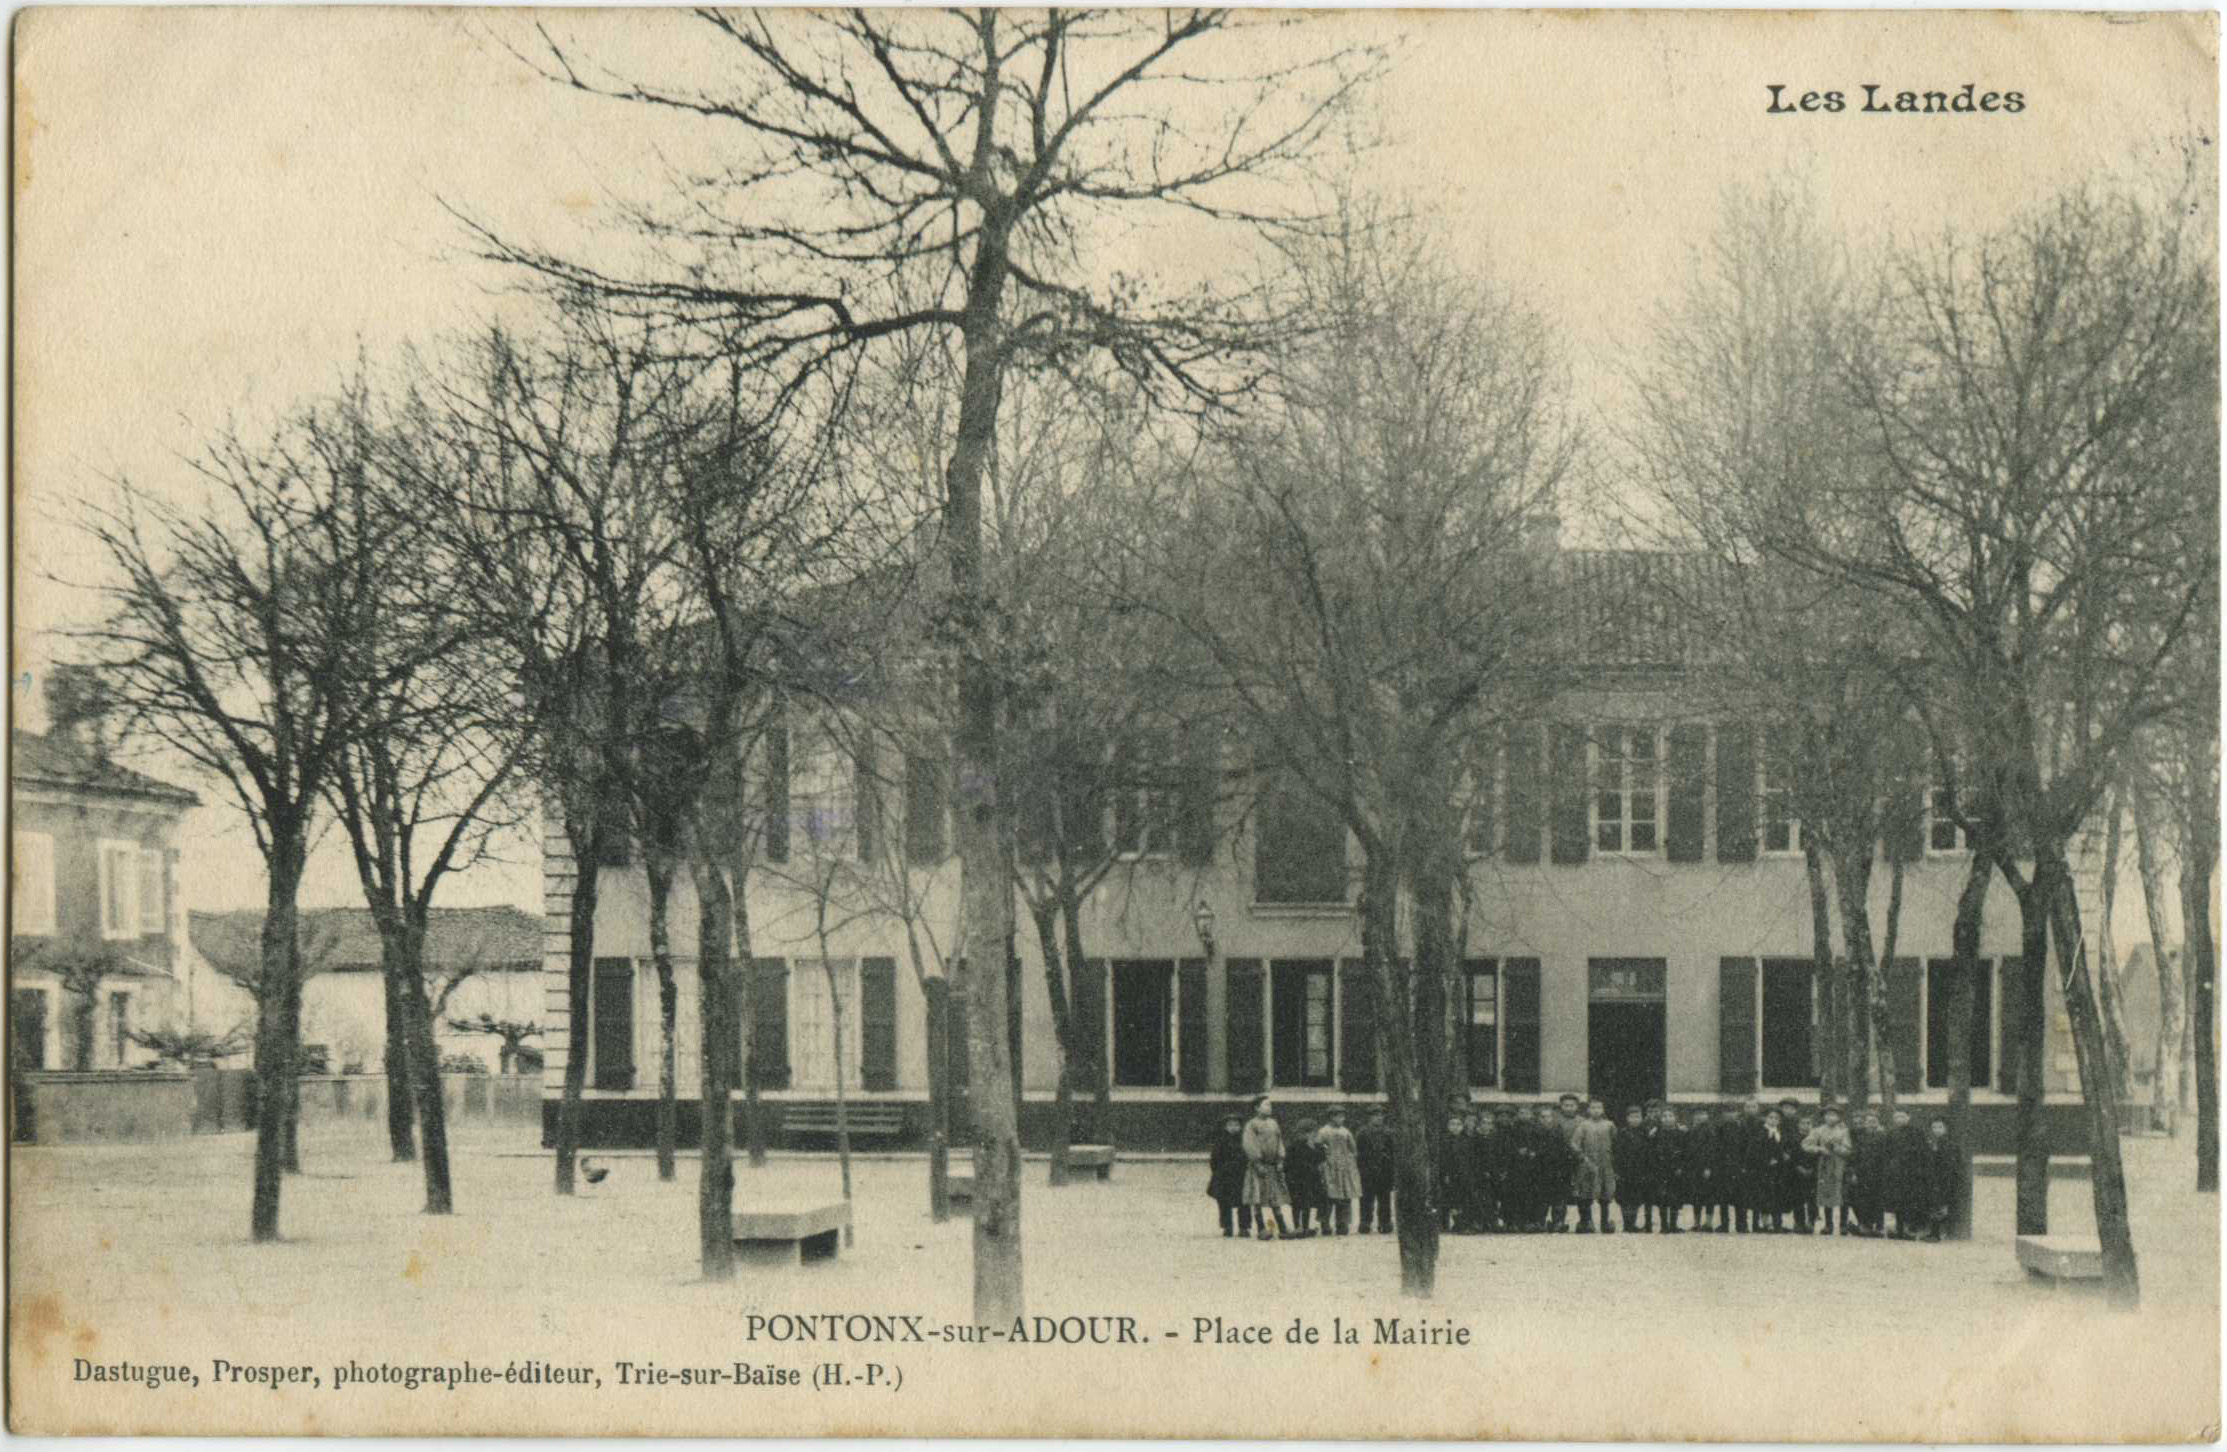 Pontonx-sur-l'Adour - Place de la Mairie